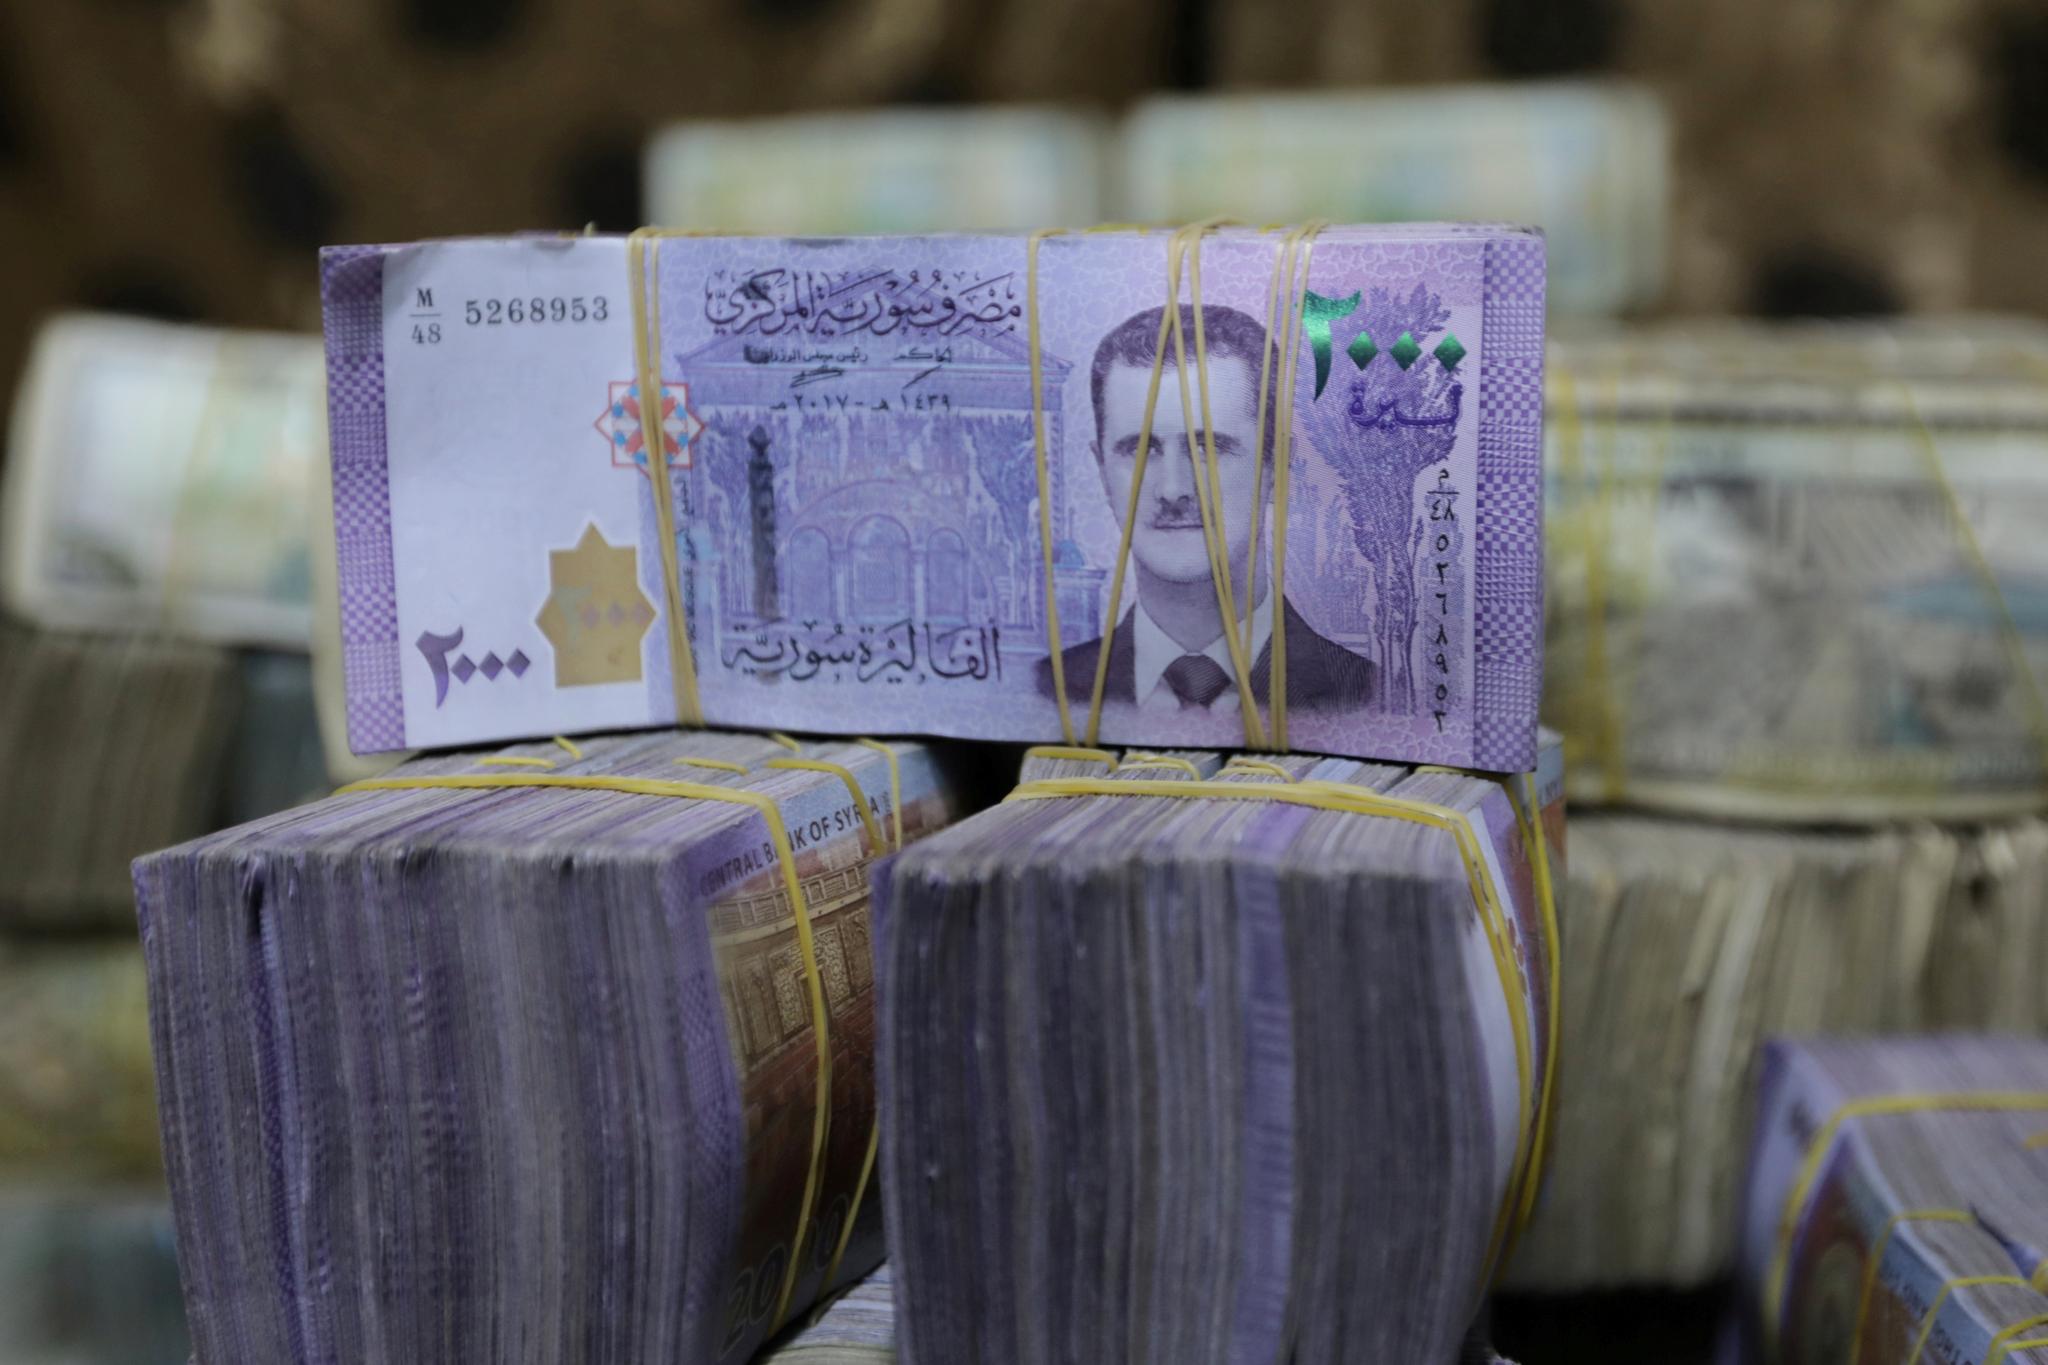 Det syriske pundet er stadig mindre verdt. Nå koster en dollar over 3500 pund på svartebørsen. I 2010 kostet en dollar 47 pund. 